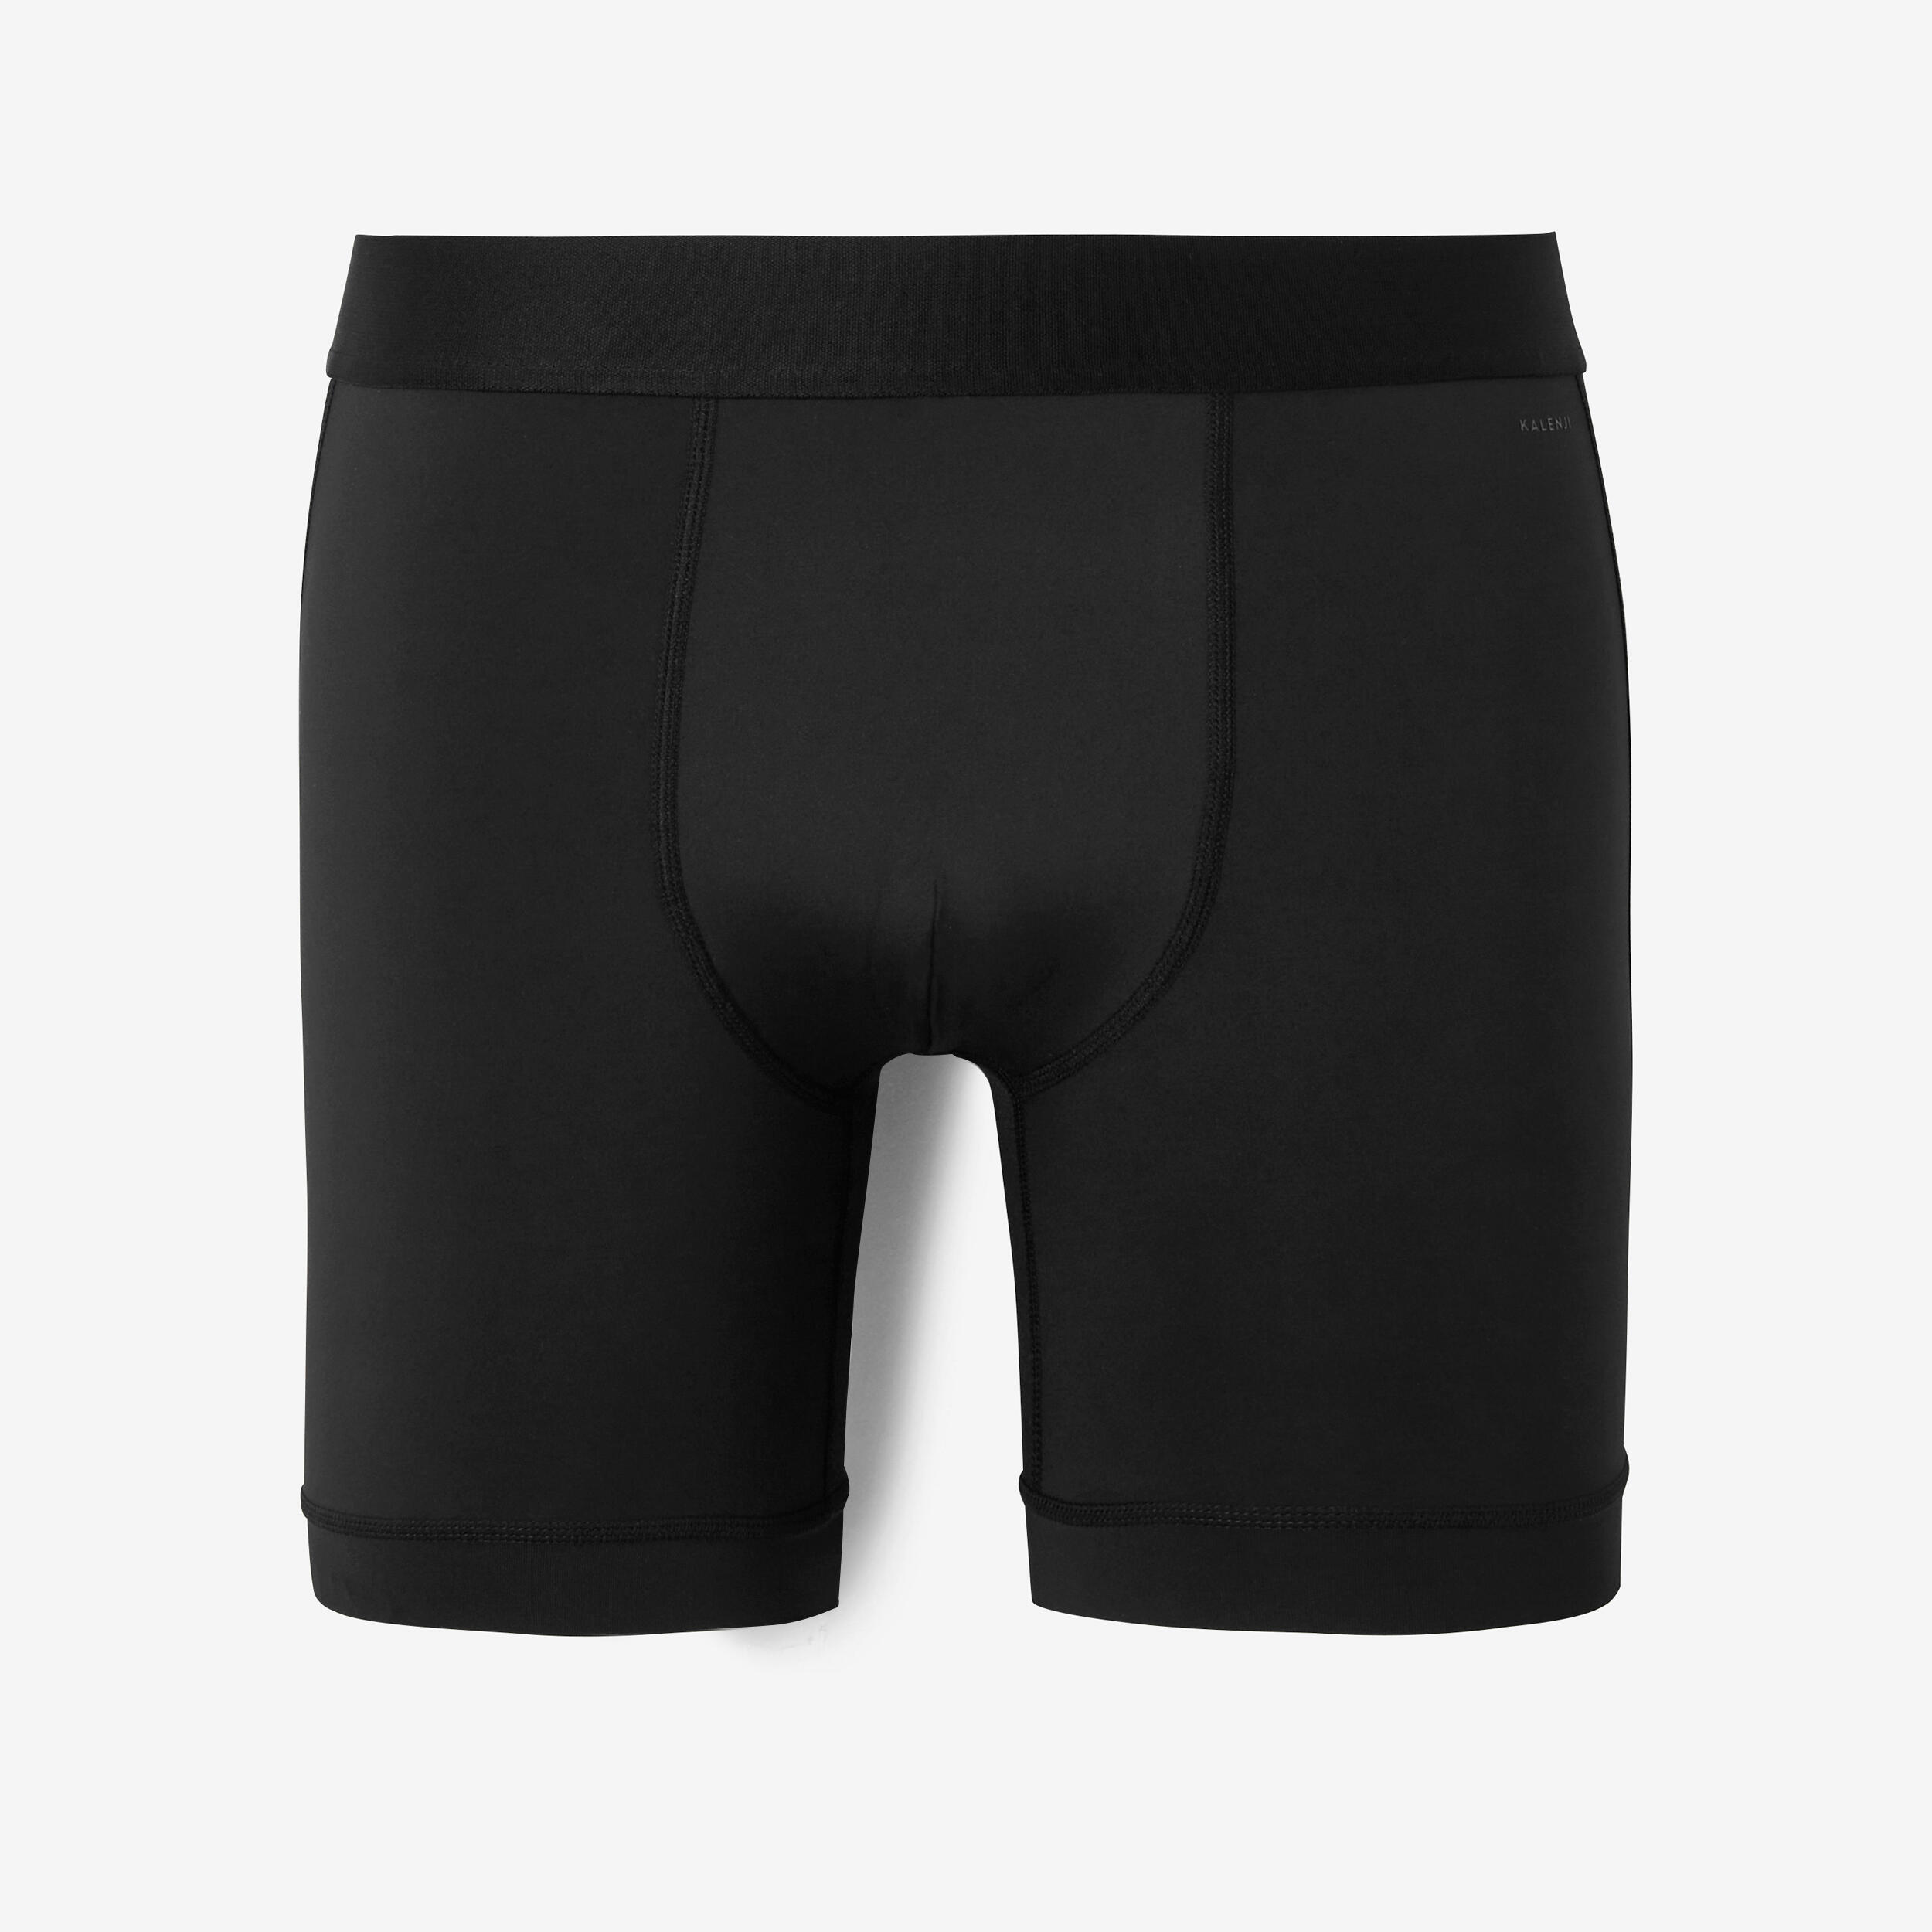 Go-Dry Cool Performance Boxer-Brief Underwear -- 5-inch inseam